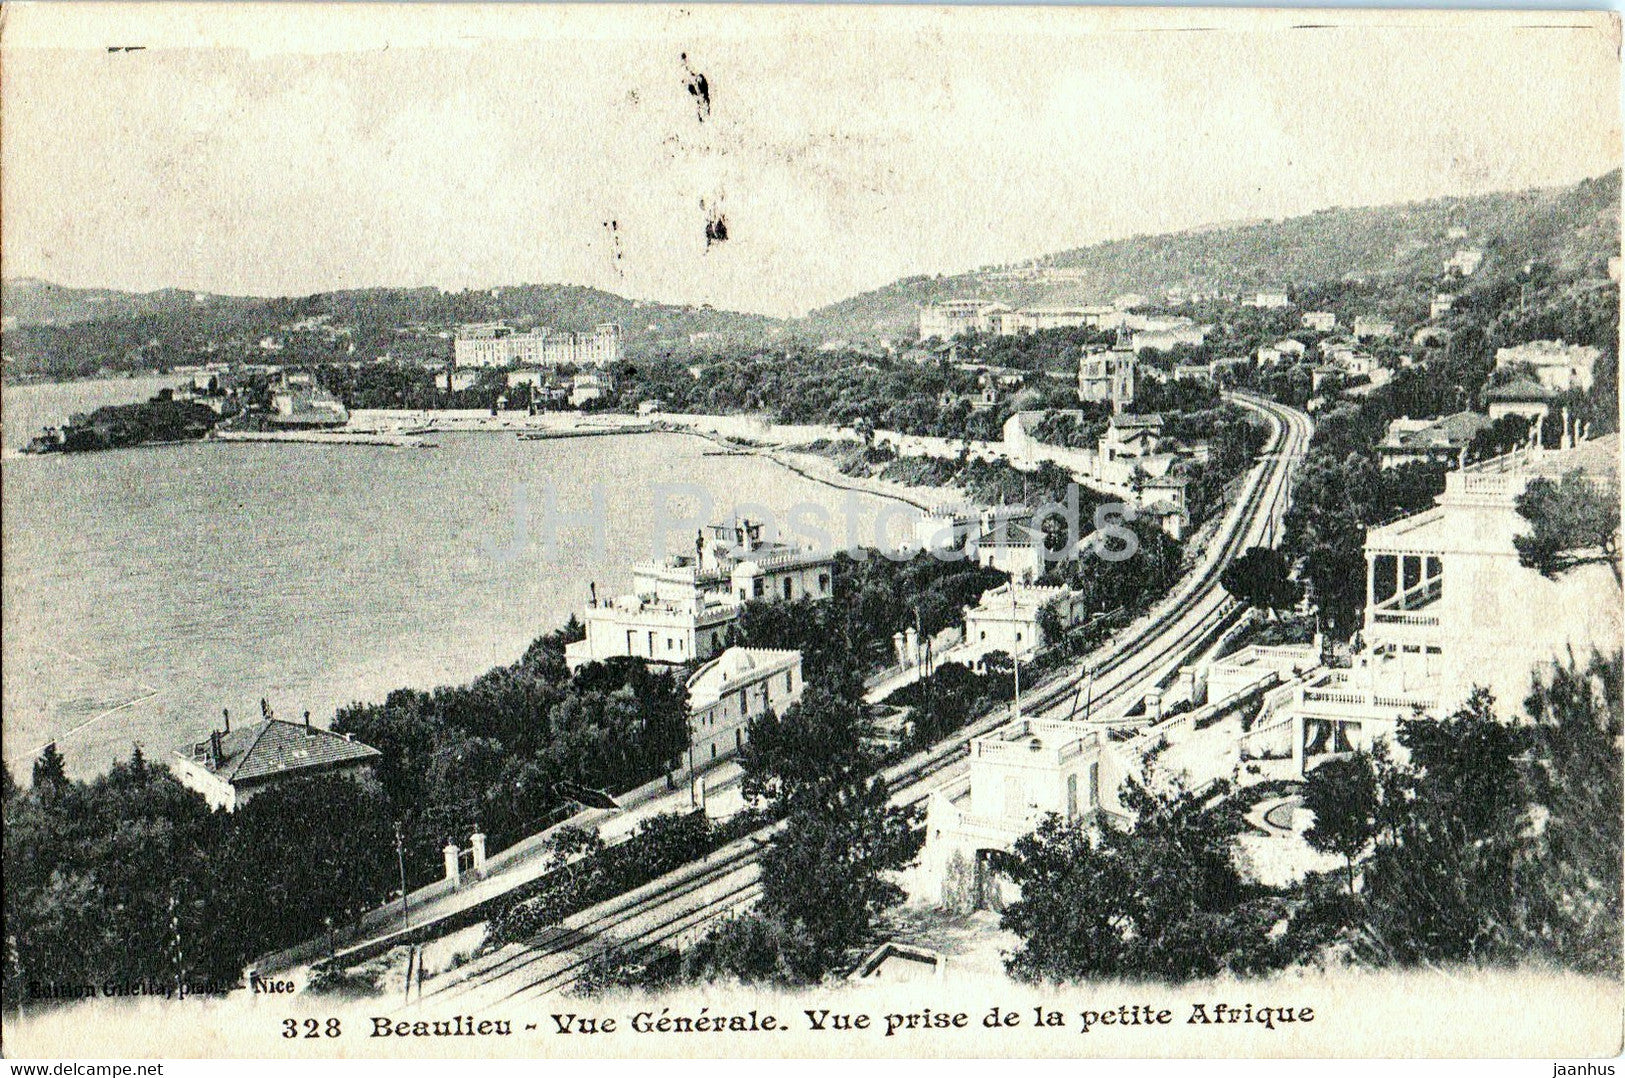 Beaulieu - Vue Generale - Vue prise de la petite Afrique - 328 - old postcard - France - used - JH Postcards